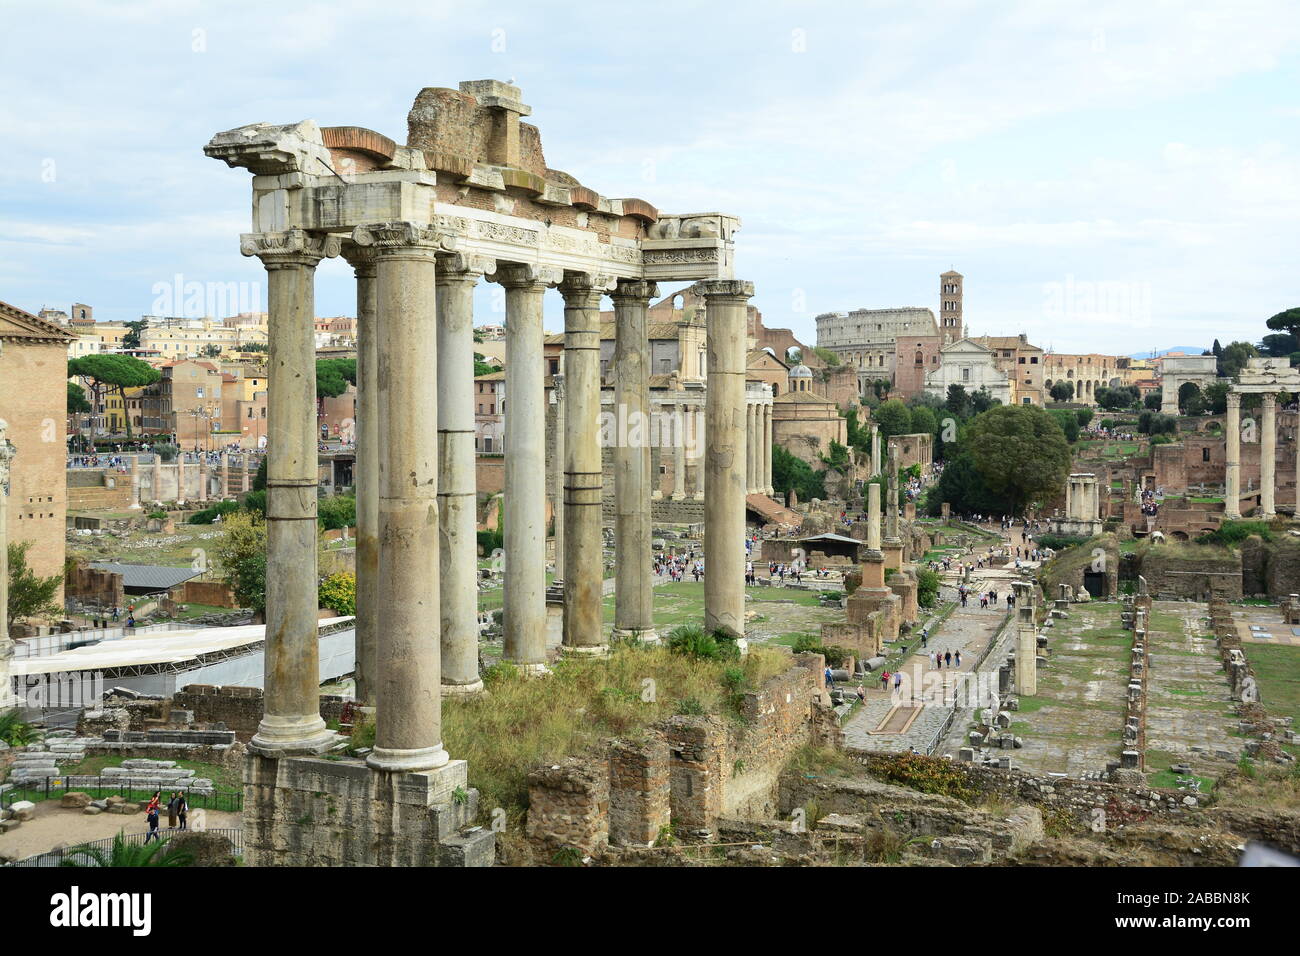 Forum romain à Rome Italie, une véritable merveille du monde Banque D'Images